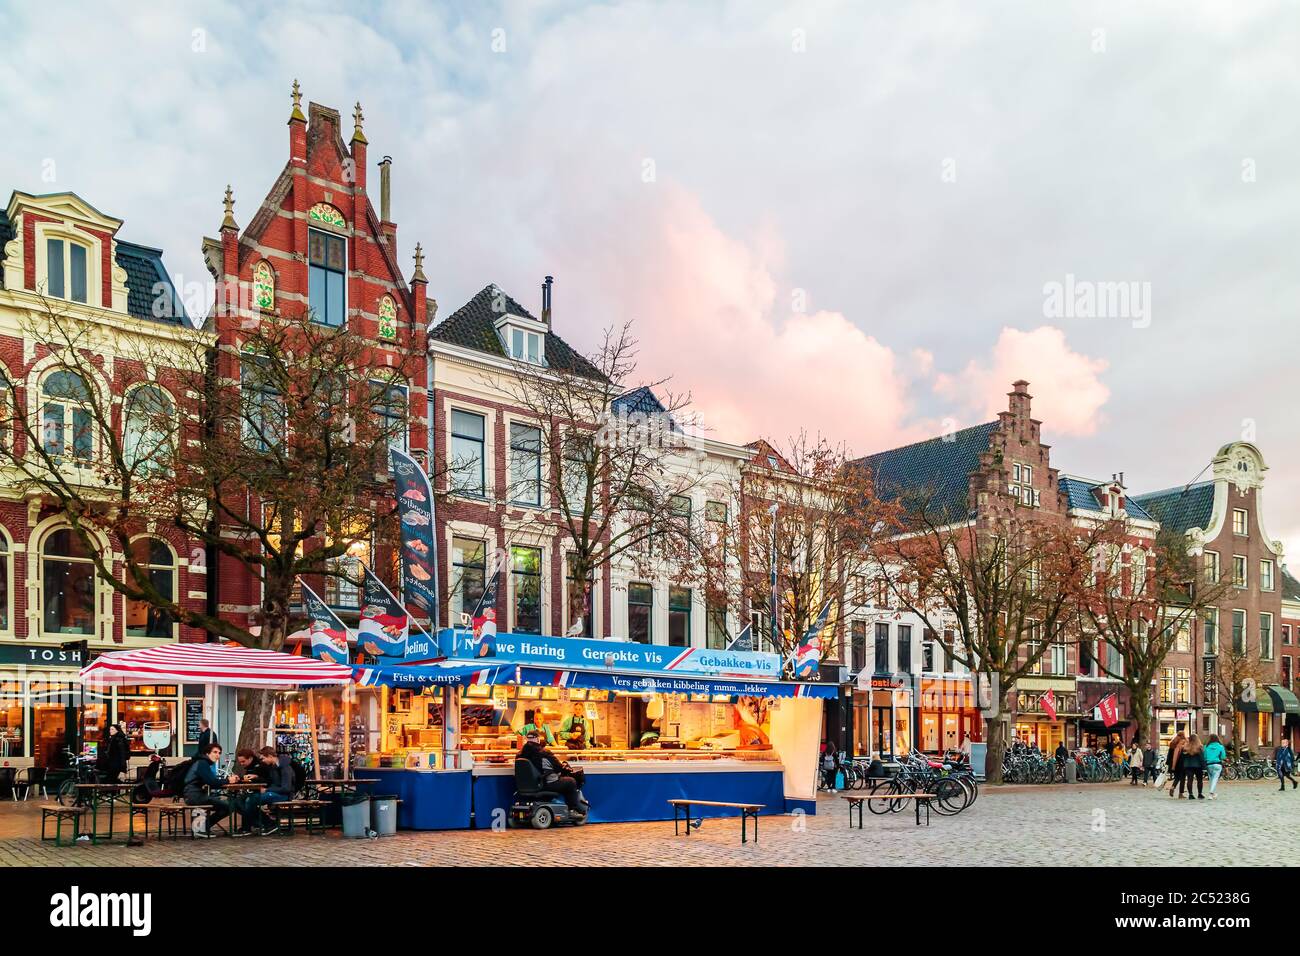 GRONINGEN, NIEDERLANDE - 2. NOVEMBER 2017: Fischmarkt Stand auf dem niederländischen Vismarkt Platz bei Sonnenuntergang in Groningen, Niederlande Stockfoto